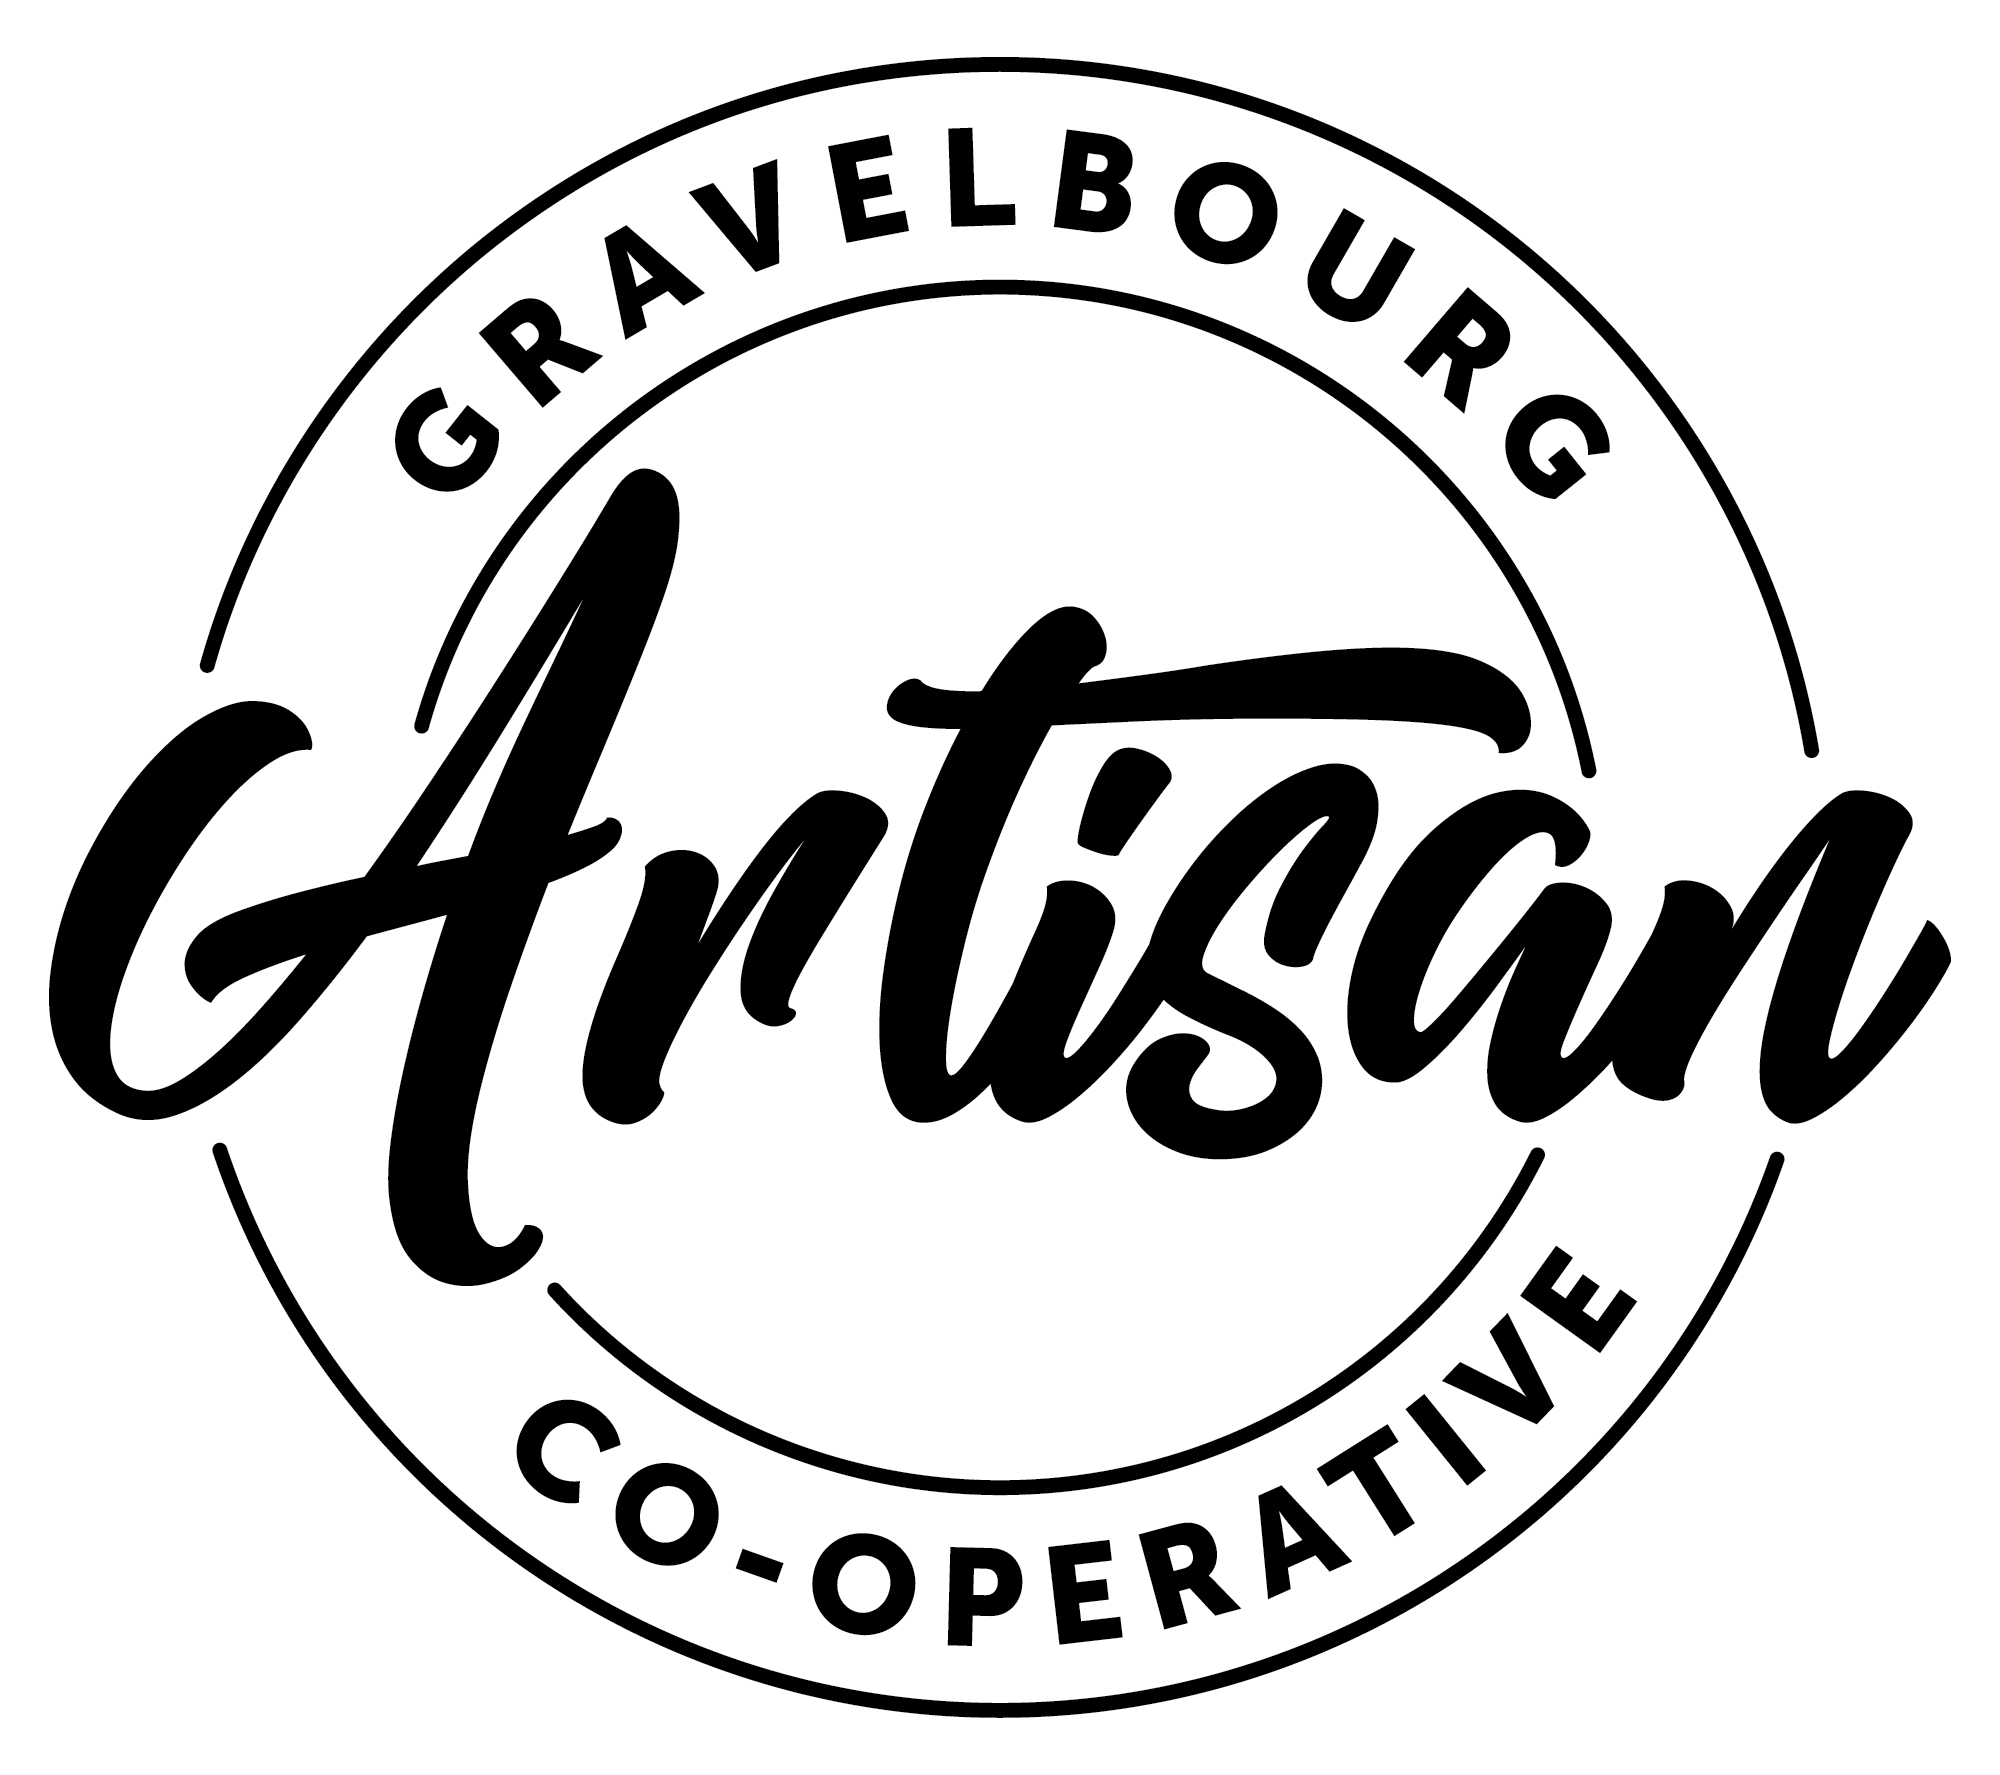 Gravelbourg Artisan Co-operative